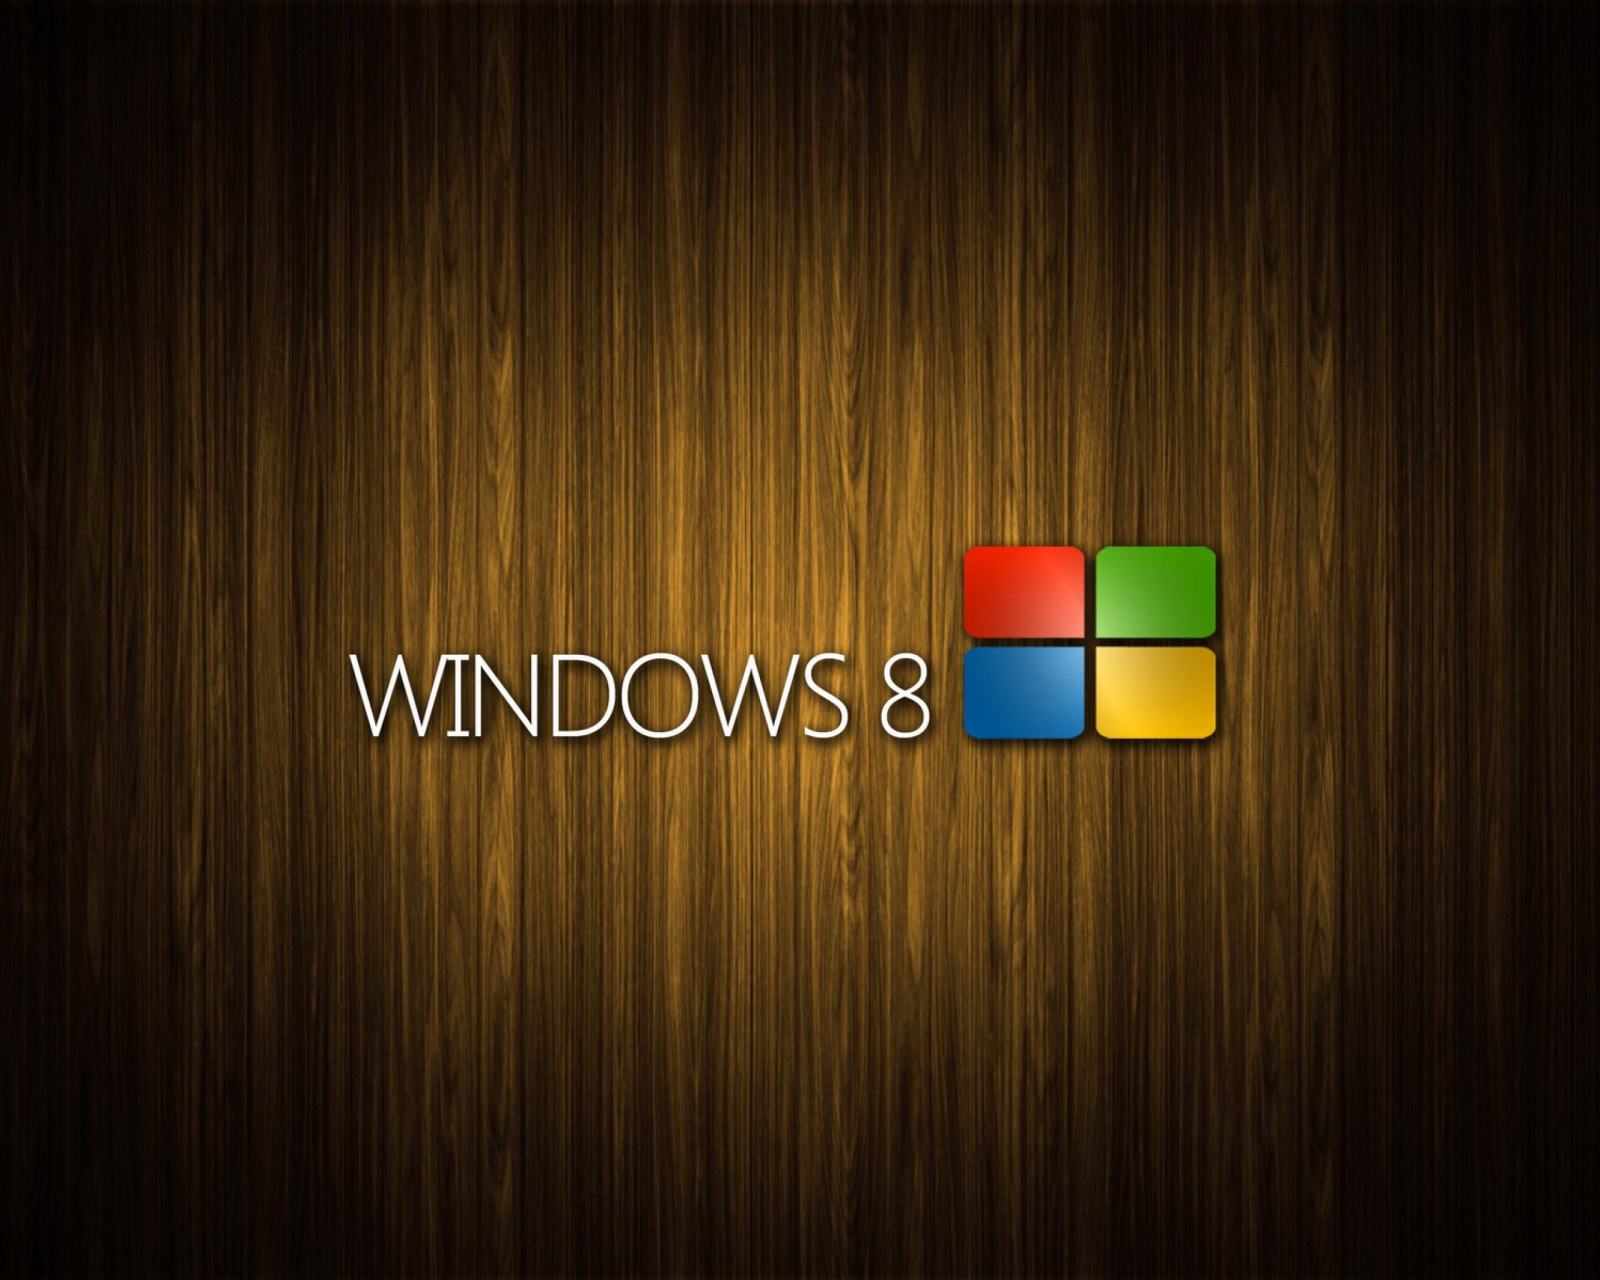 Windows 8 Wooden Emblem wallpaper 1600x1280